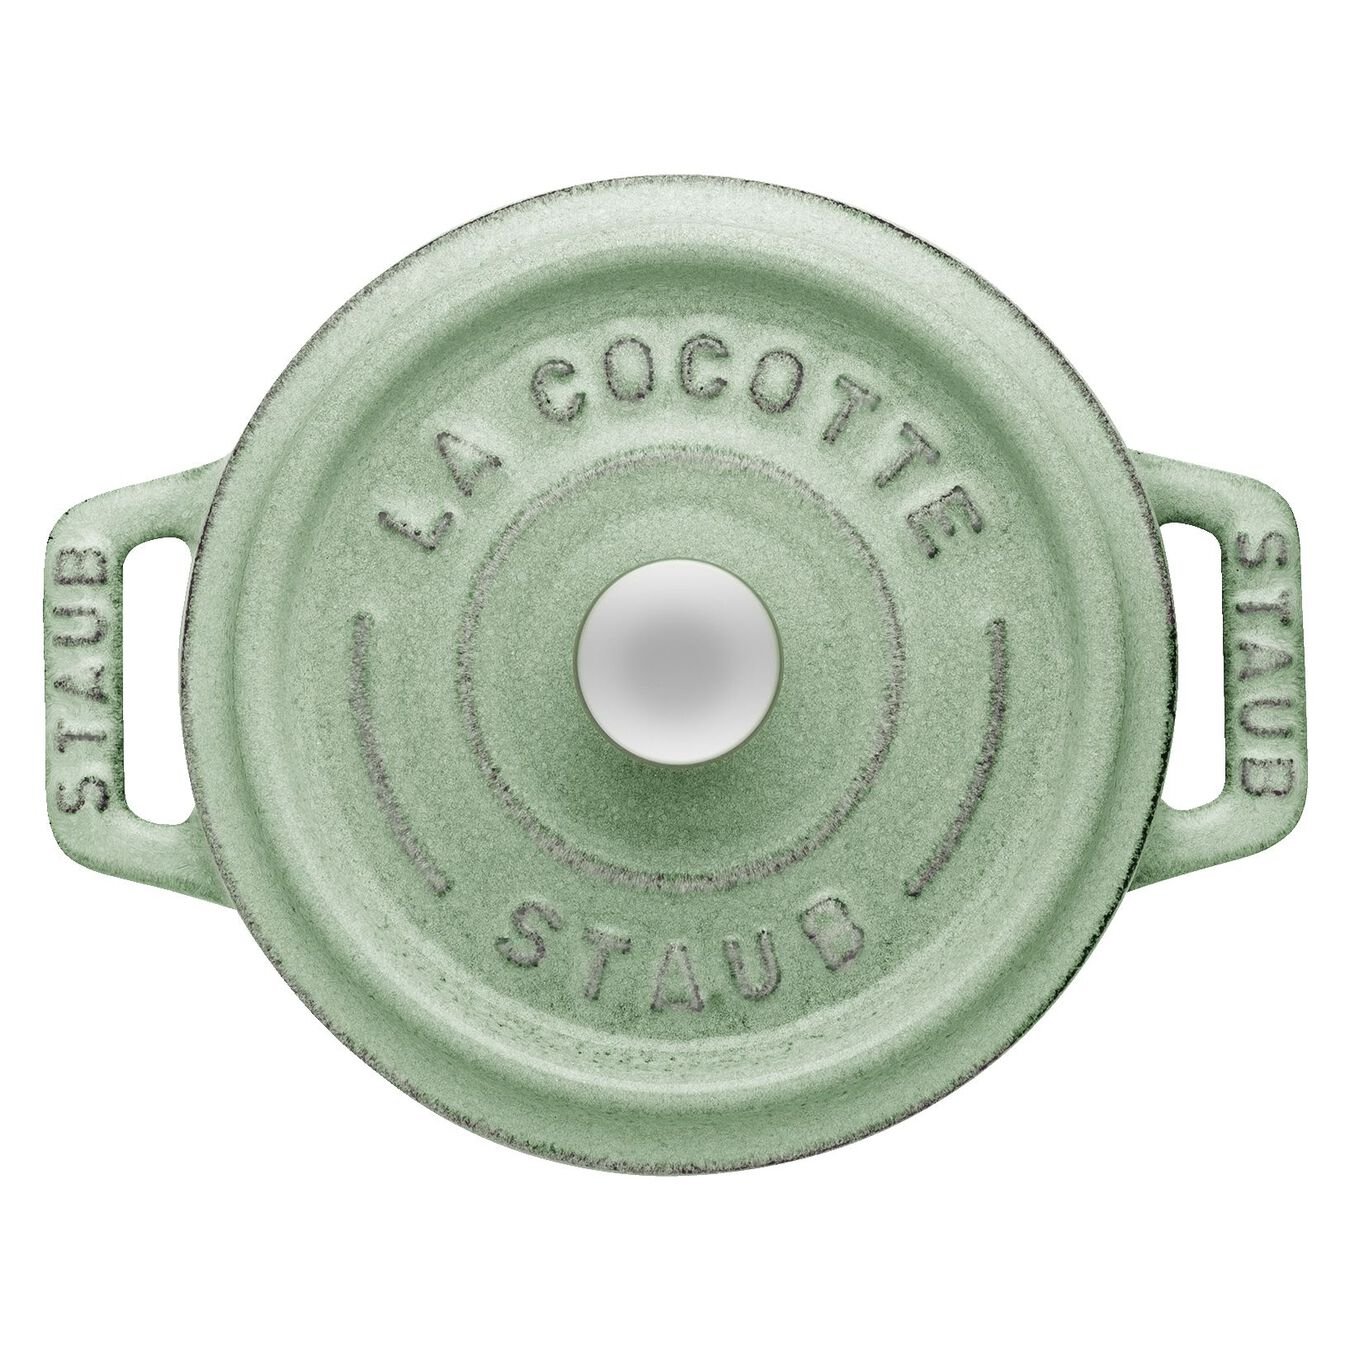 Mini Cocotte 10 cm, rund, Salbeigrün, Gusseisen,,large 4